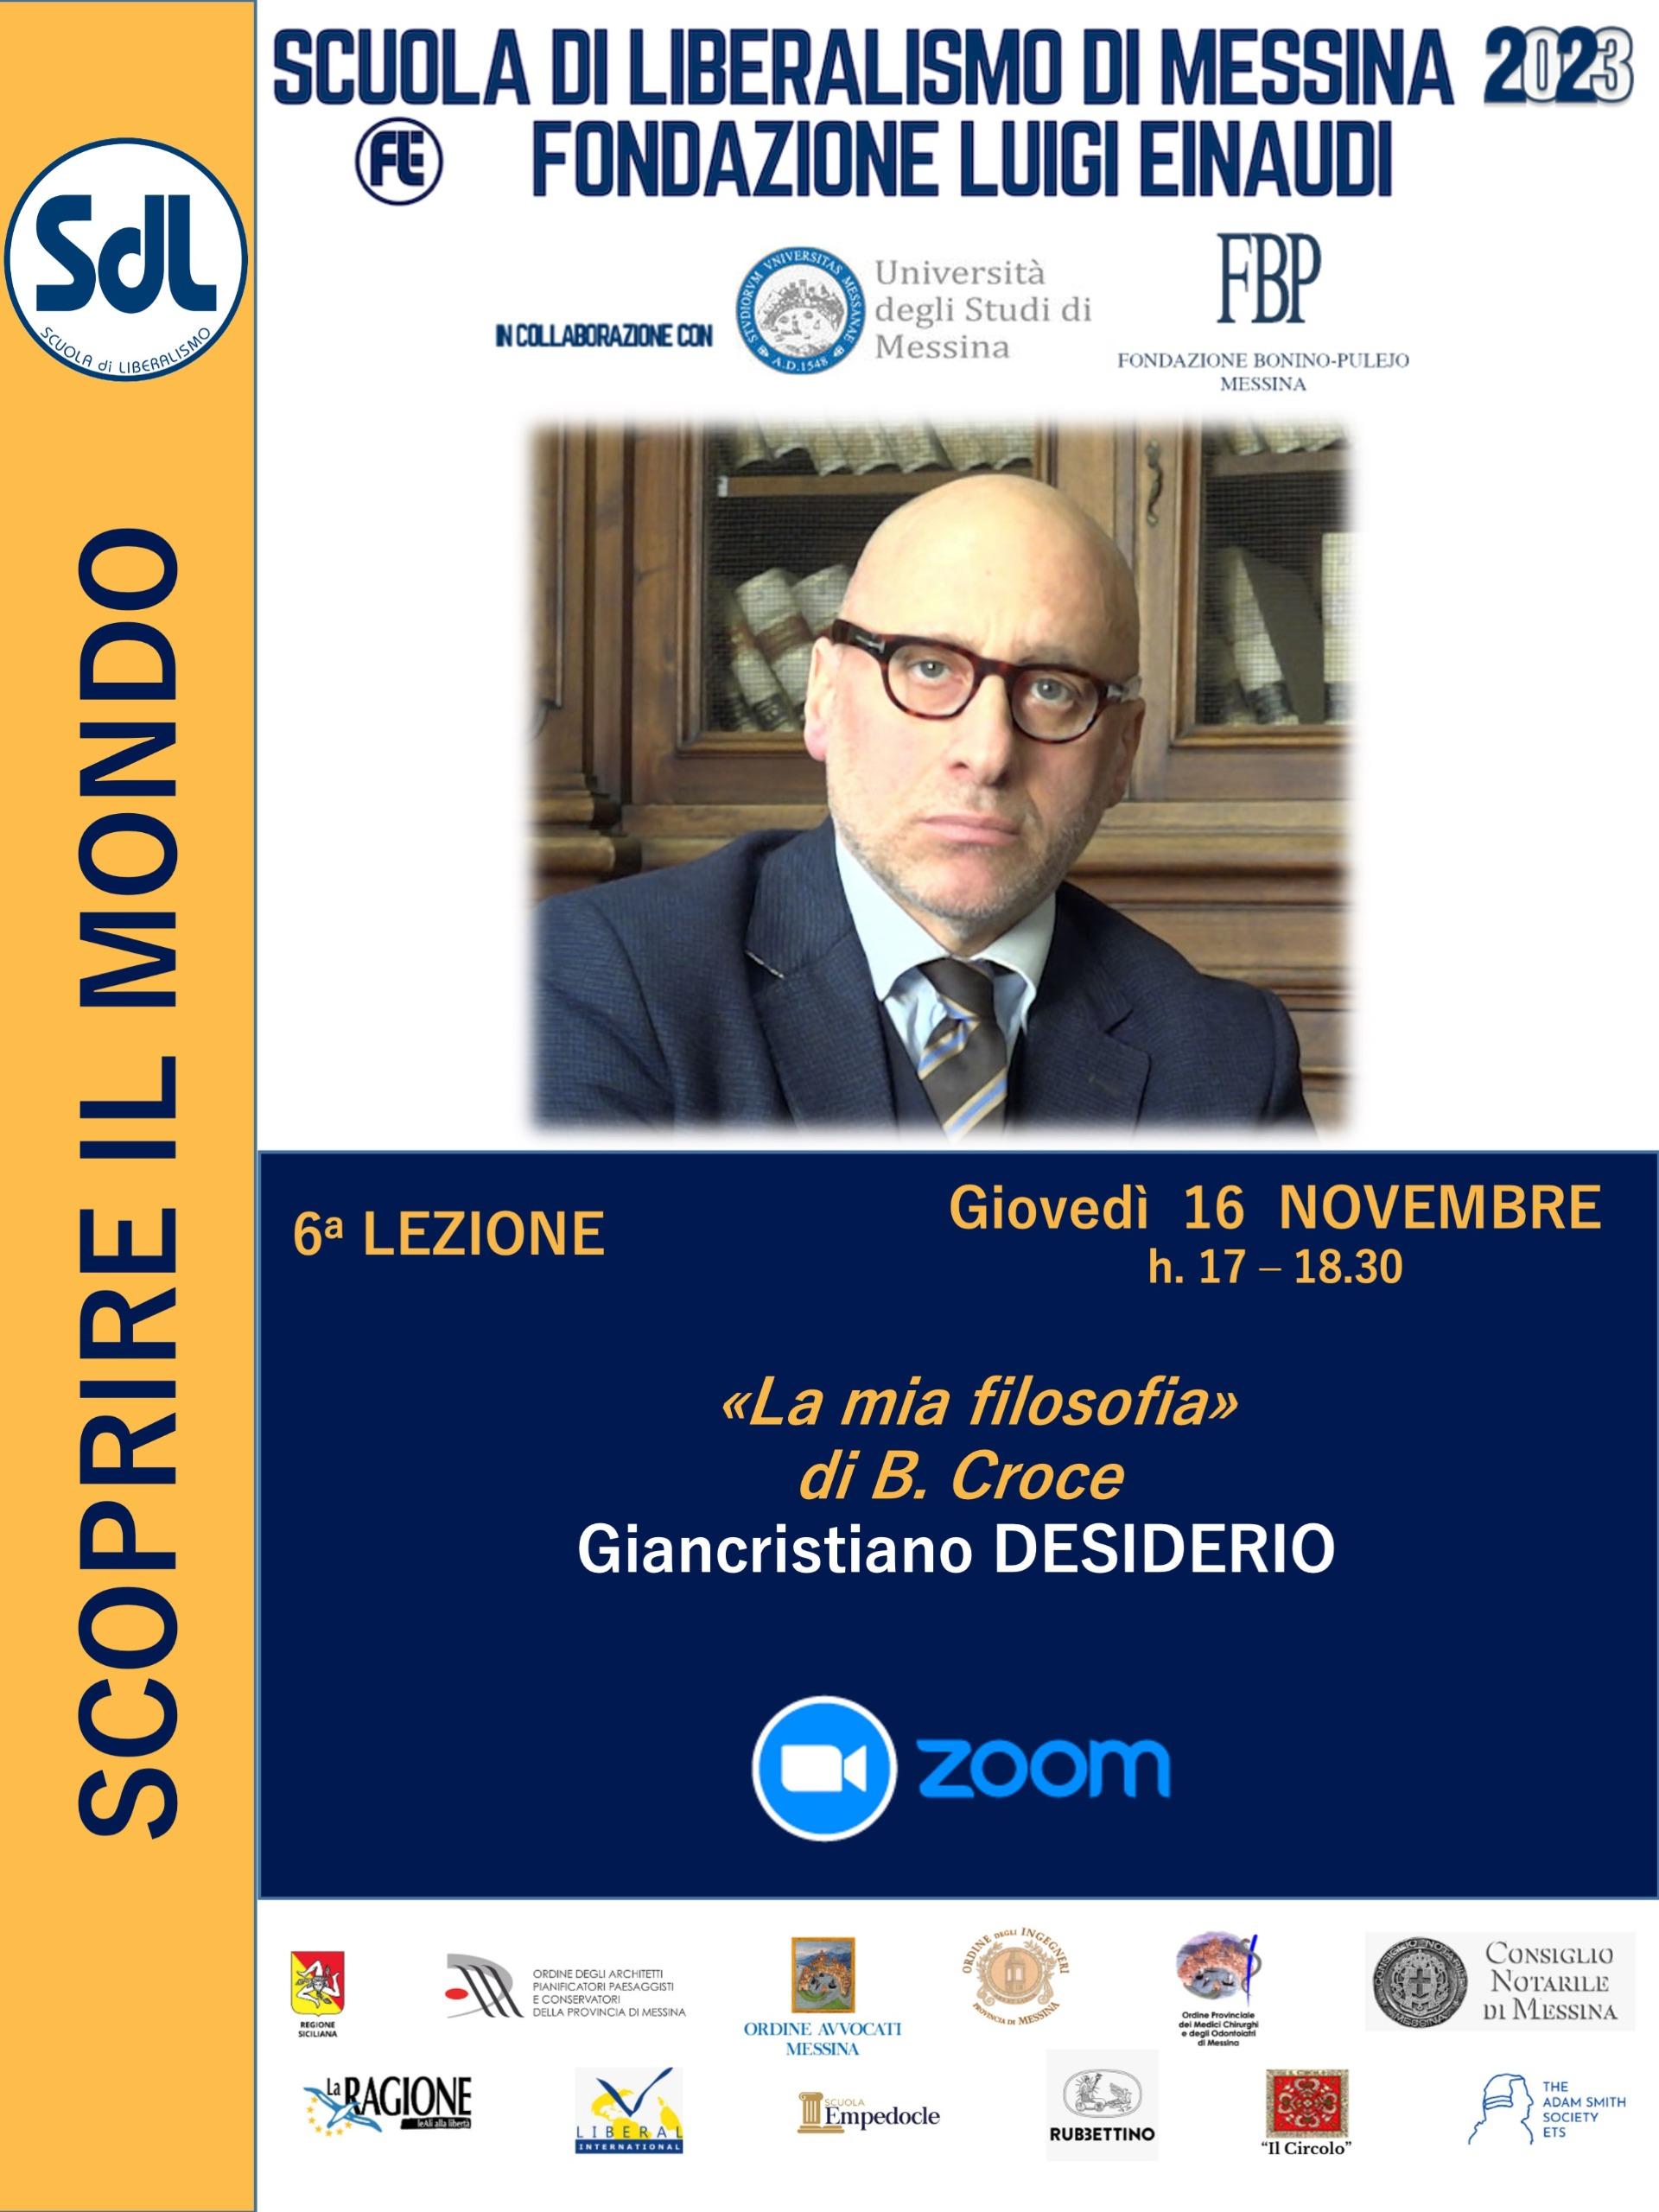 Scuola di Liberalismo 2023 – Messina: lezione del prof. Giancristiano Desiderio sul tema “La mia filosofia”